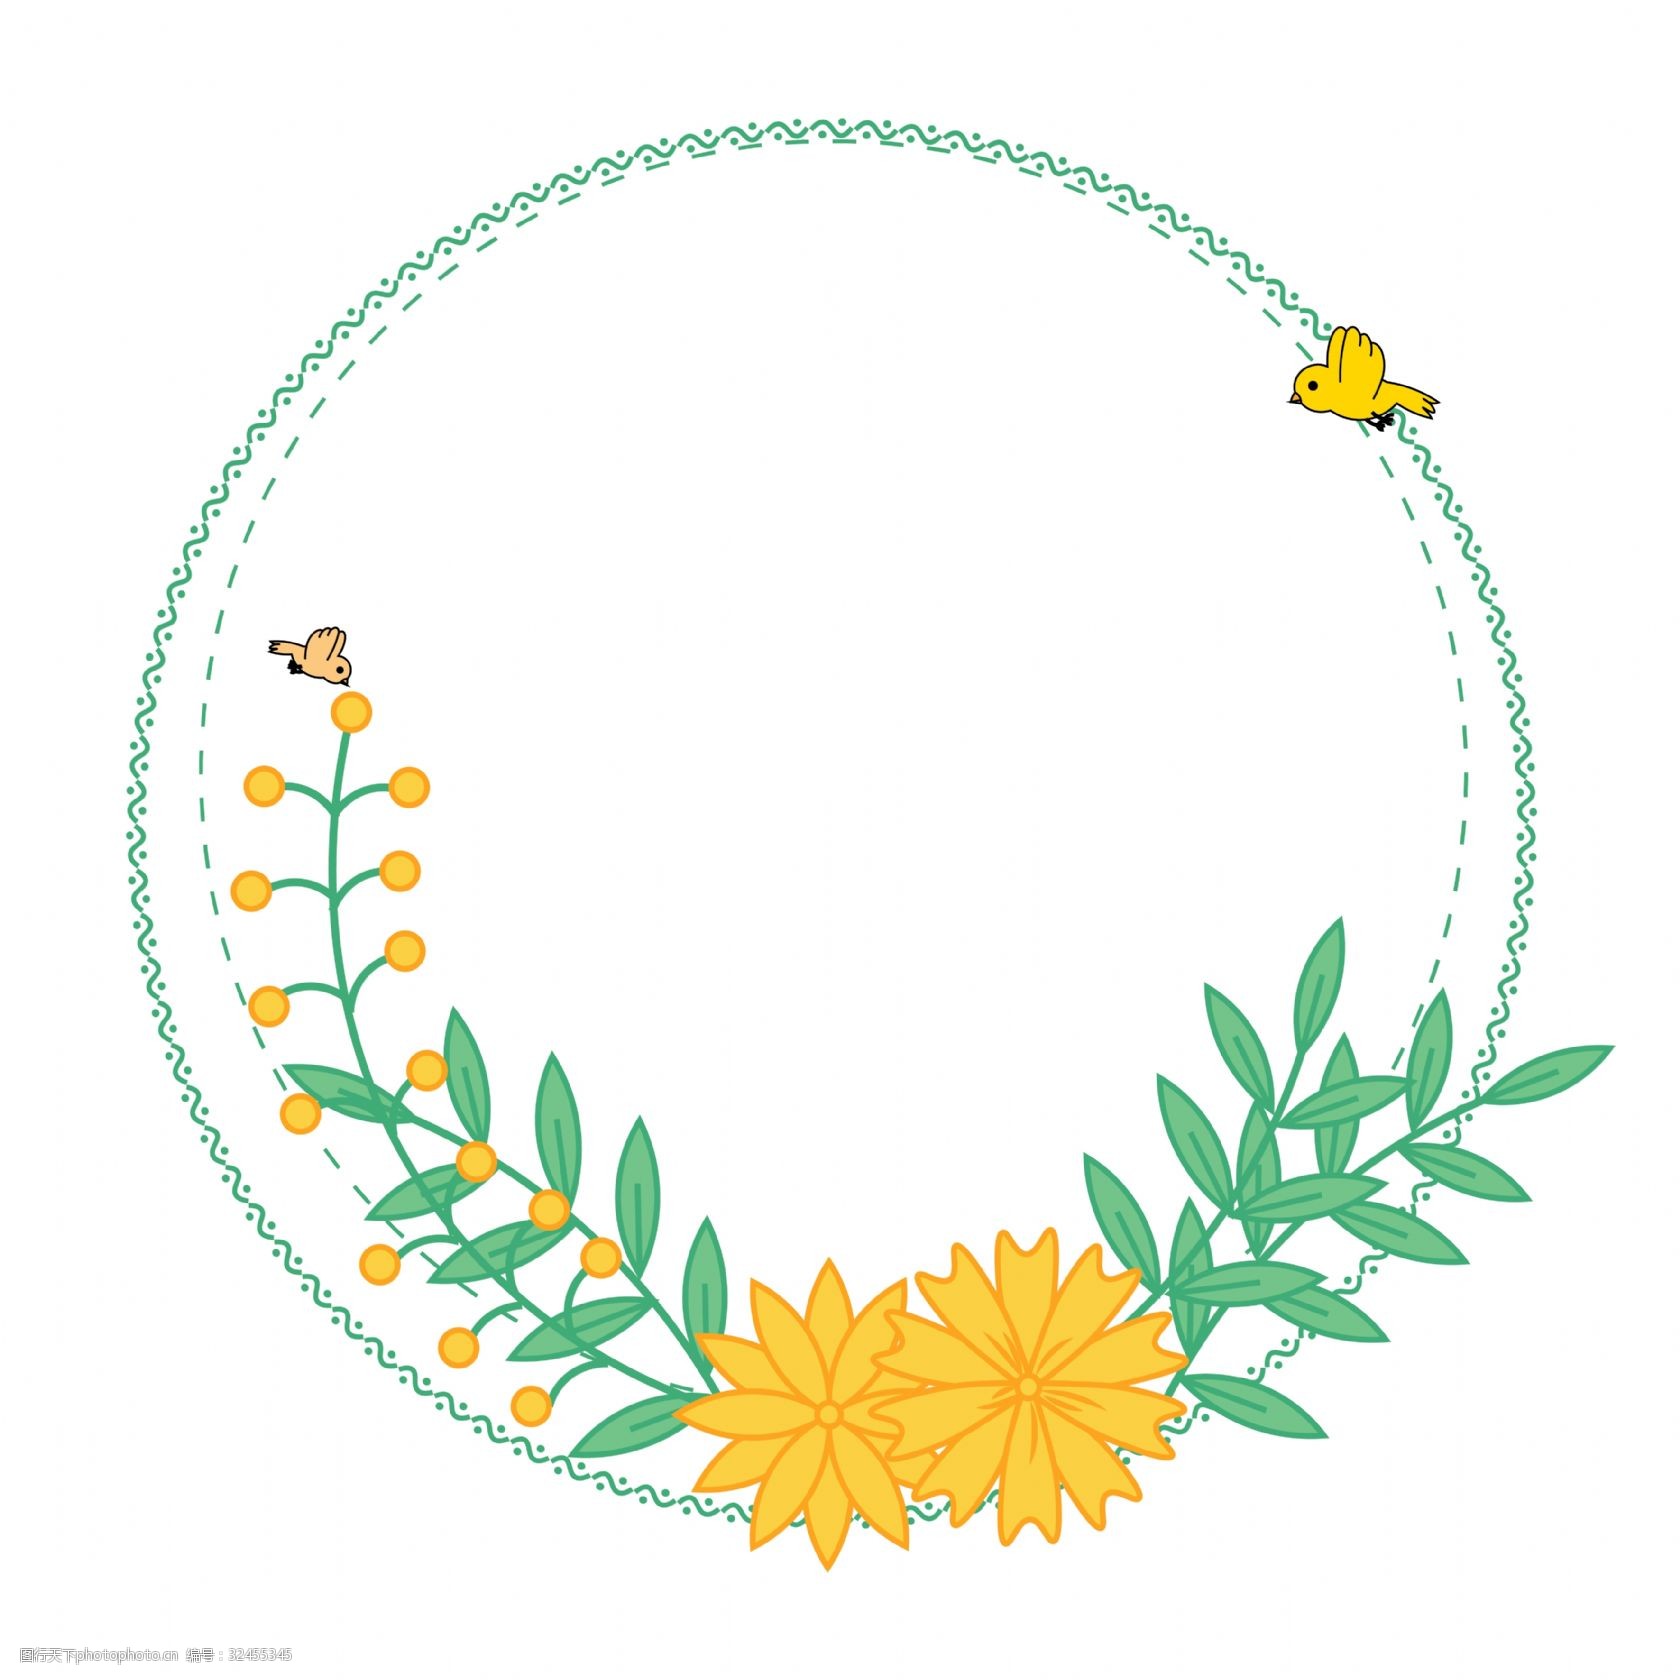 春天可爱暖黄色小花圆形可爱矢量造型边框